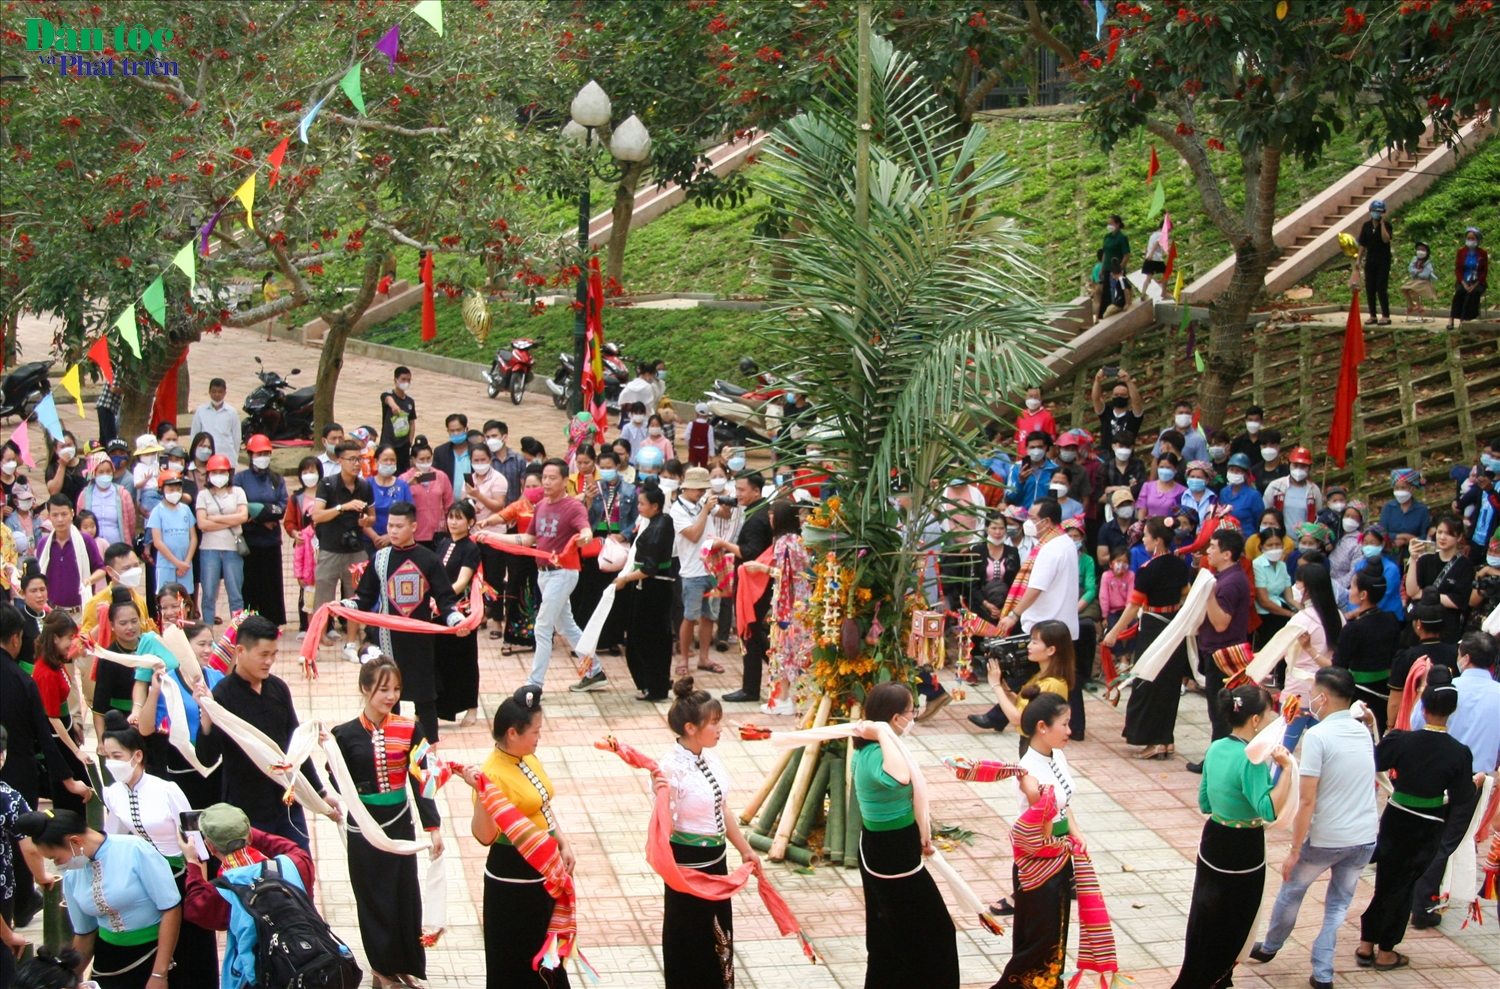 Khăn piêu, áo cóm, điệu xòe là đặc trưng văn hóa của người Thái Đen các xã Pha Mu, Mường Mít, Khoen On, Ta Gia và Tà Hừa huyện Than Uyên, tỉnh Lai Châu